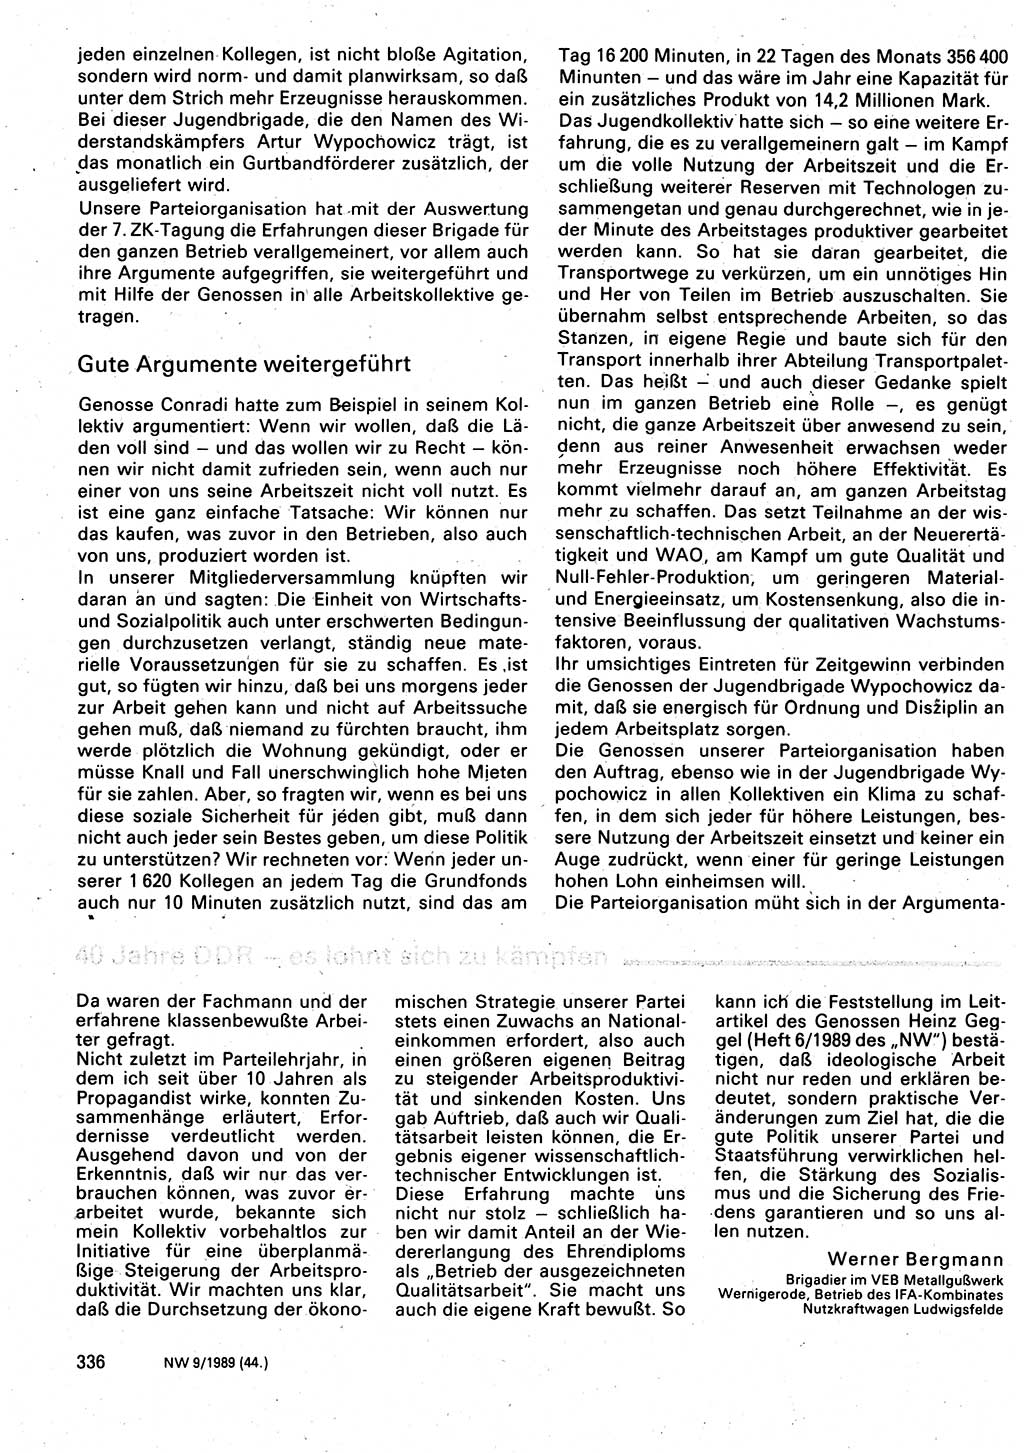 Neuer Weg (NW), Organ des Zentralkomitees (ZK) der SED (Sozialistische Einheitspartei Deutschlands) für Fragen des Parteilebens, 44. Jahrgang [Deutsche Demokratische Republik (DDR)] 1989, Seite 336 (NW ZK SED DDR 1989, S. 336)